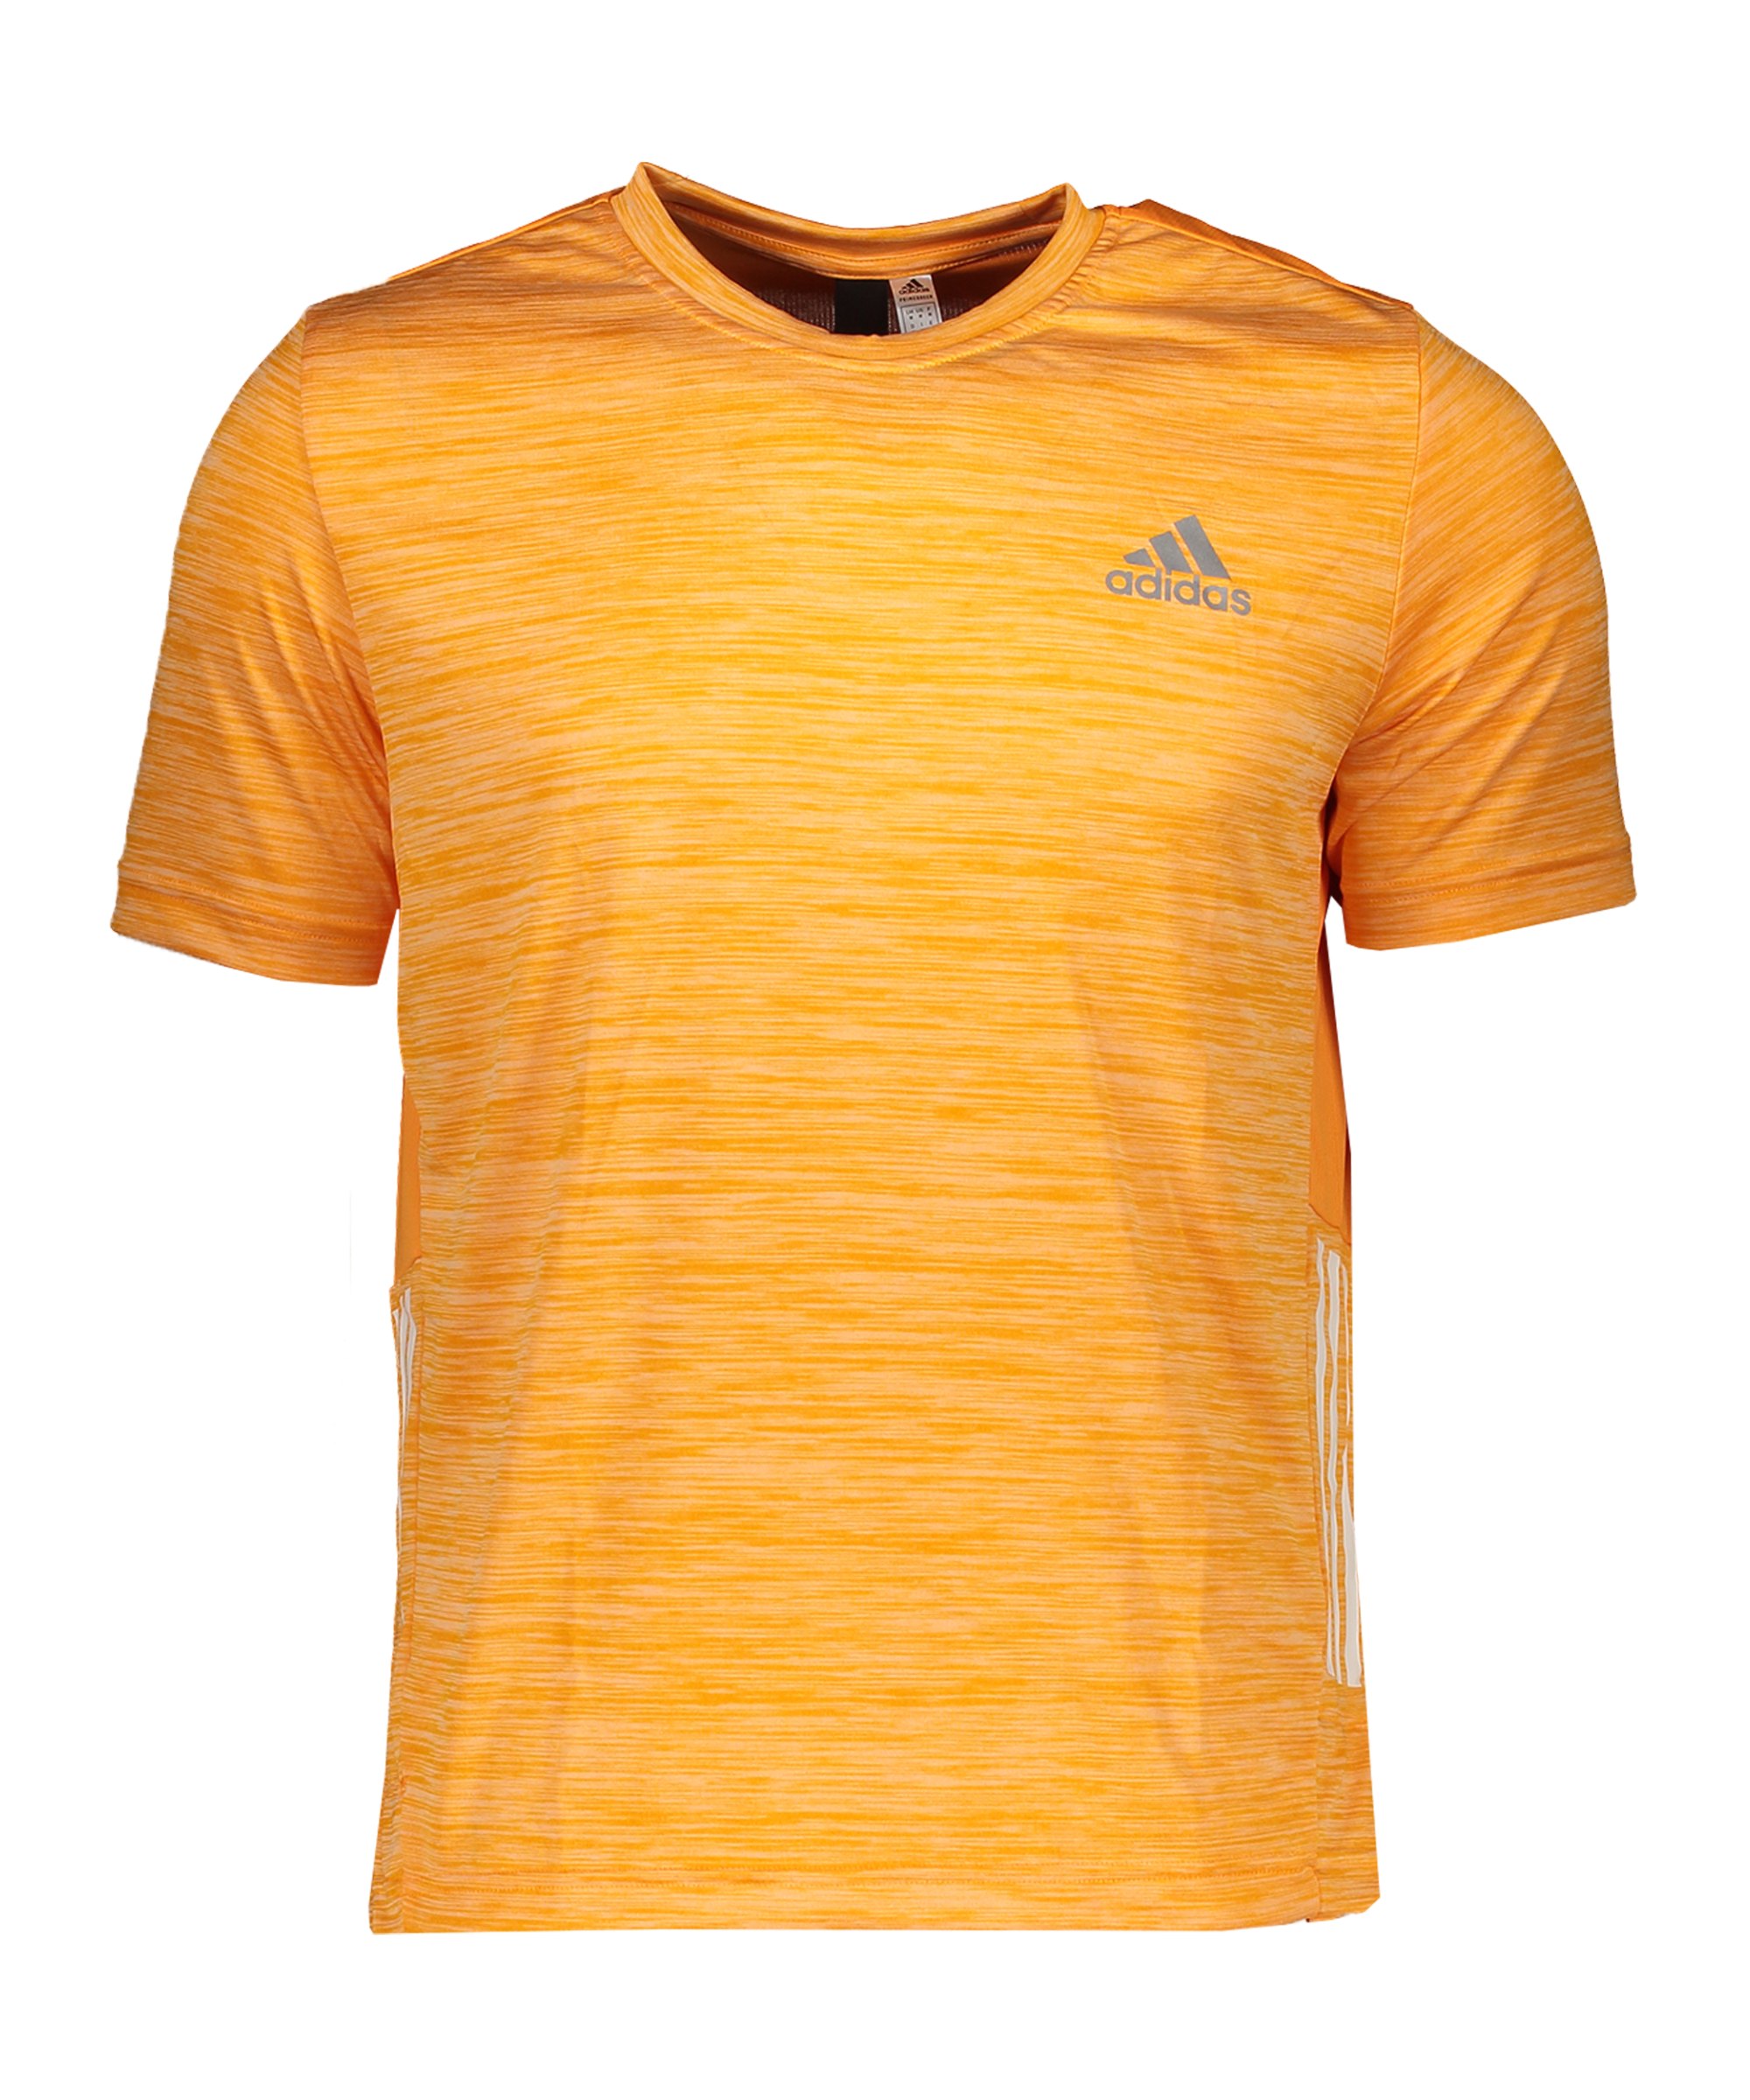 adidas T-Shirt Training Orange - orange